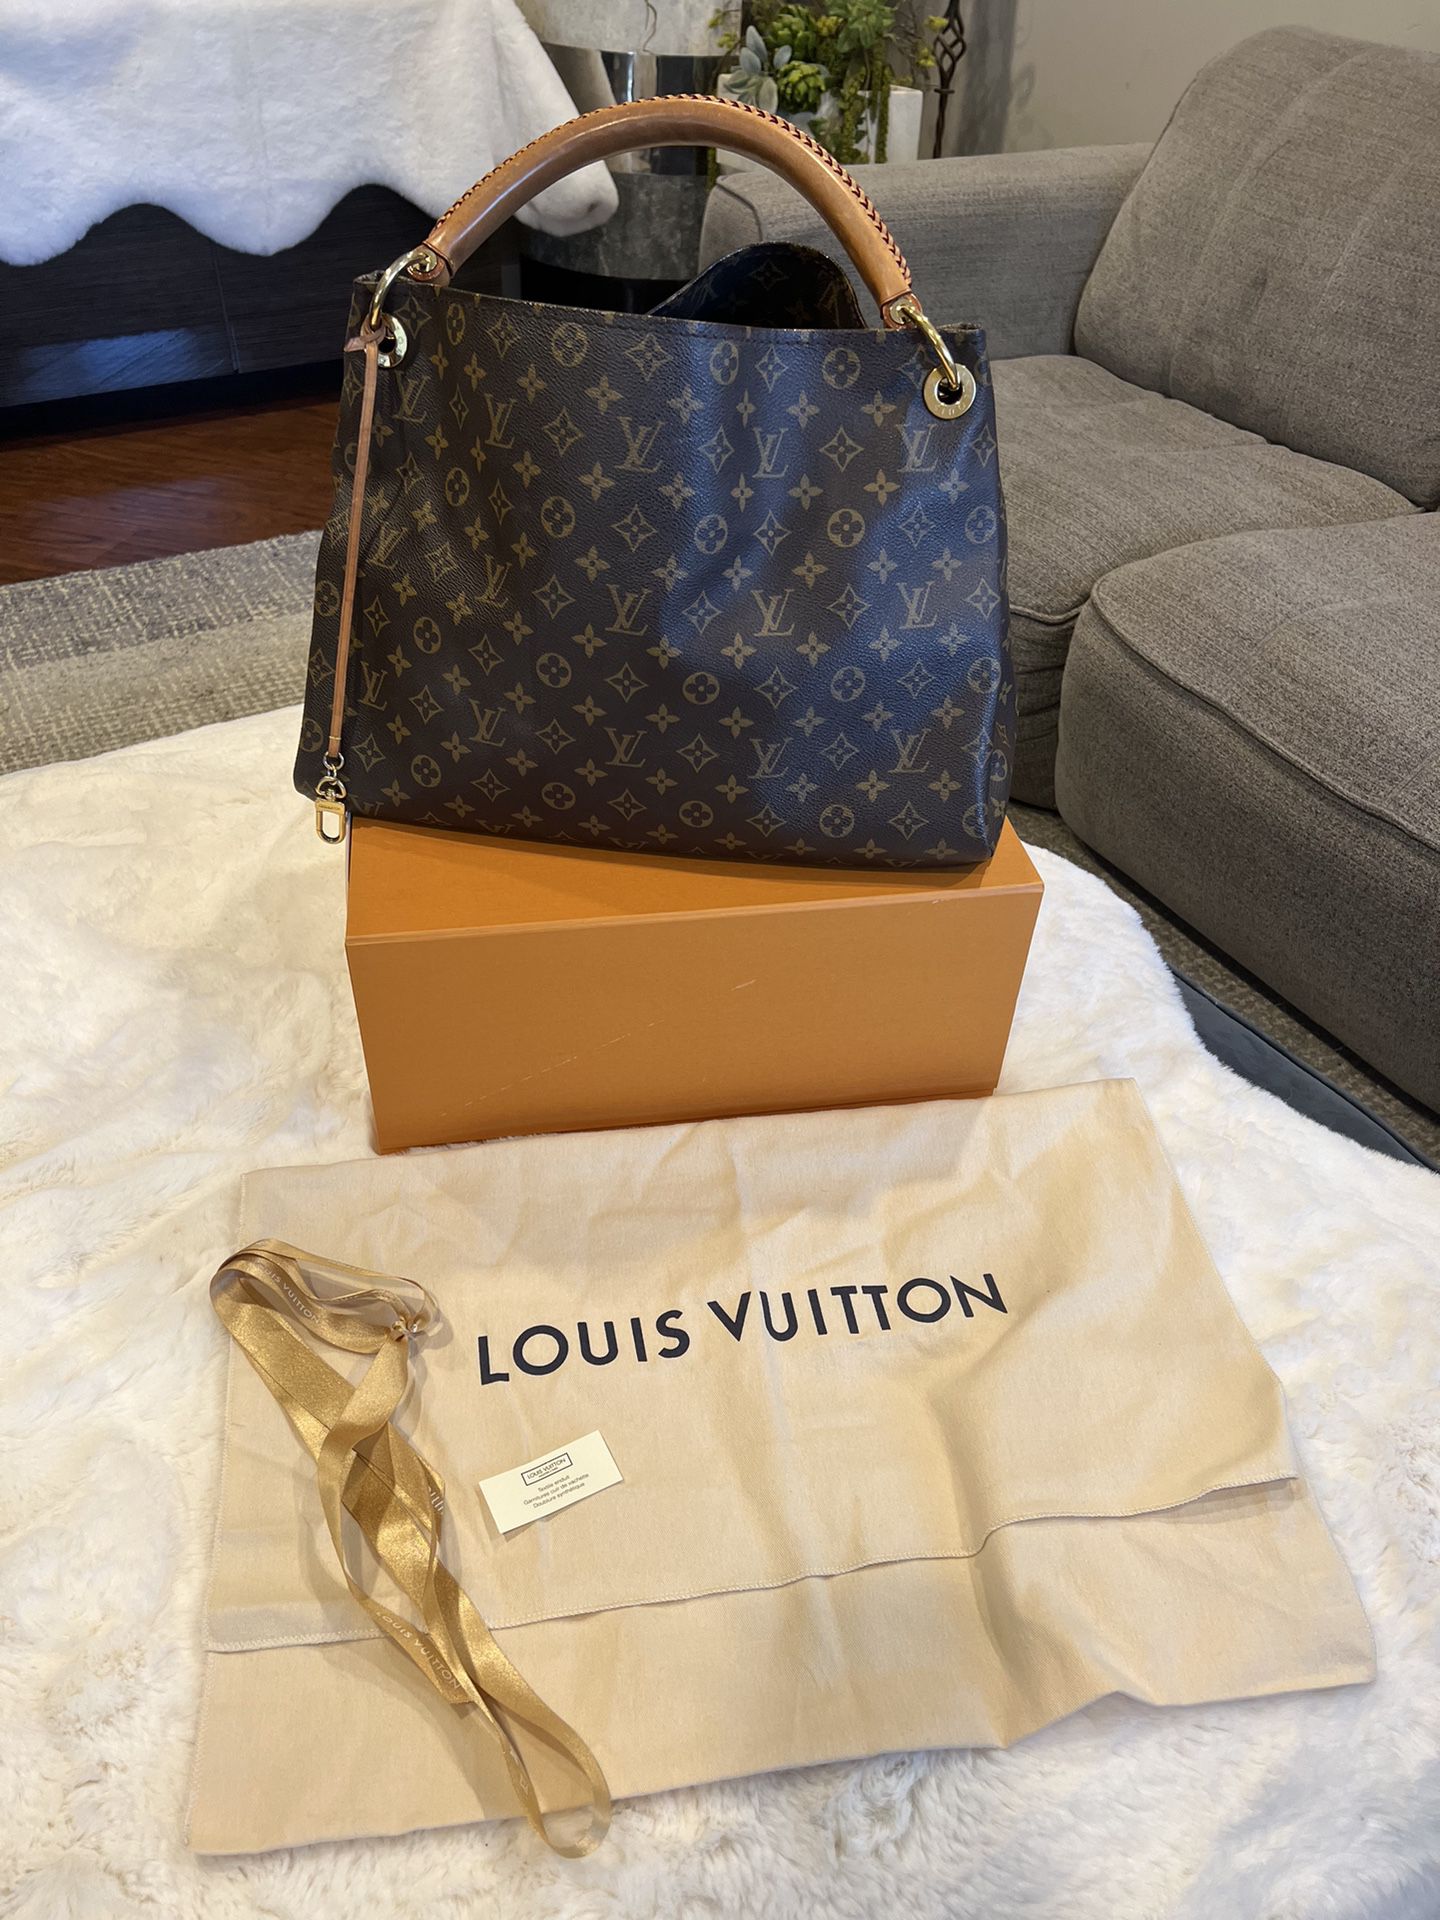 Authentic Louis Vuitton Handbag. 